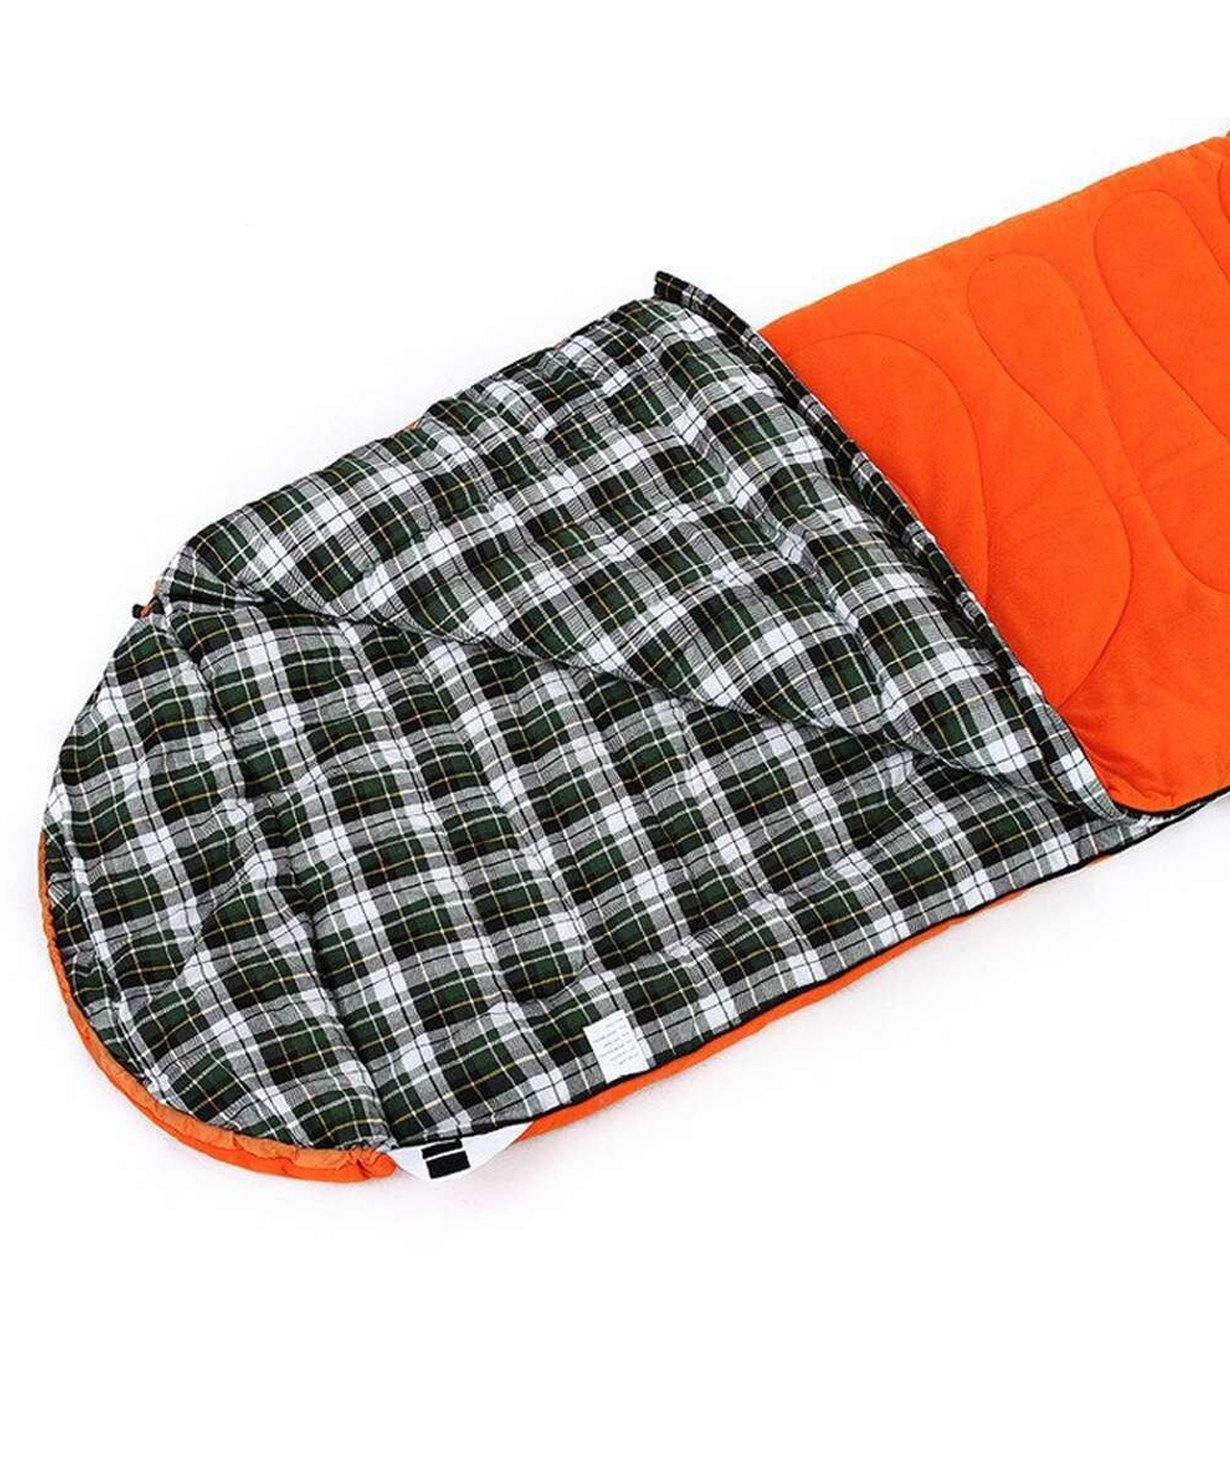 Спальный мешок «Mabsport» оранжевый, -15 +10°С